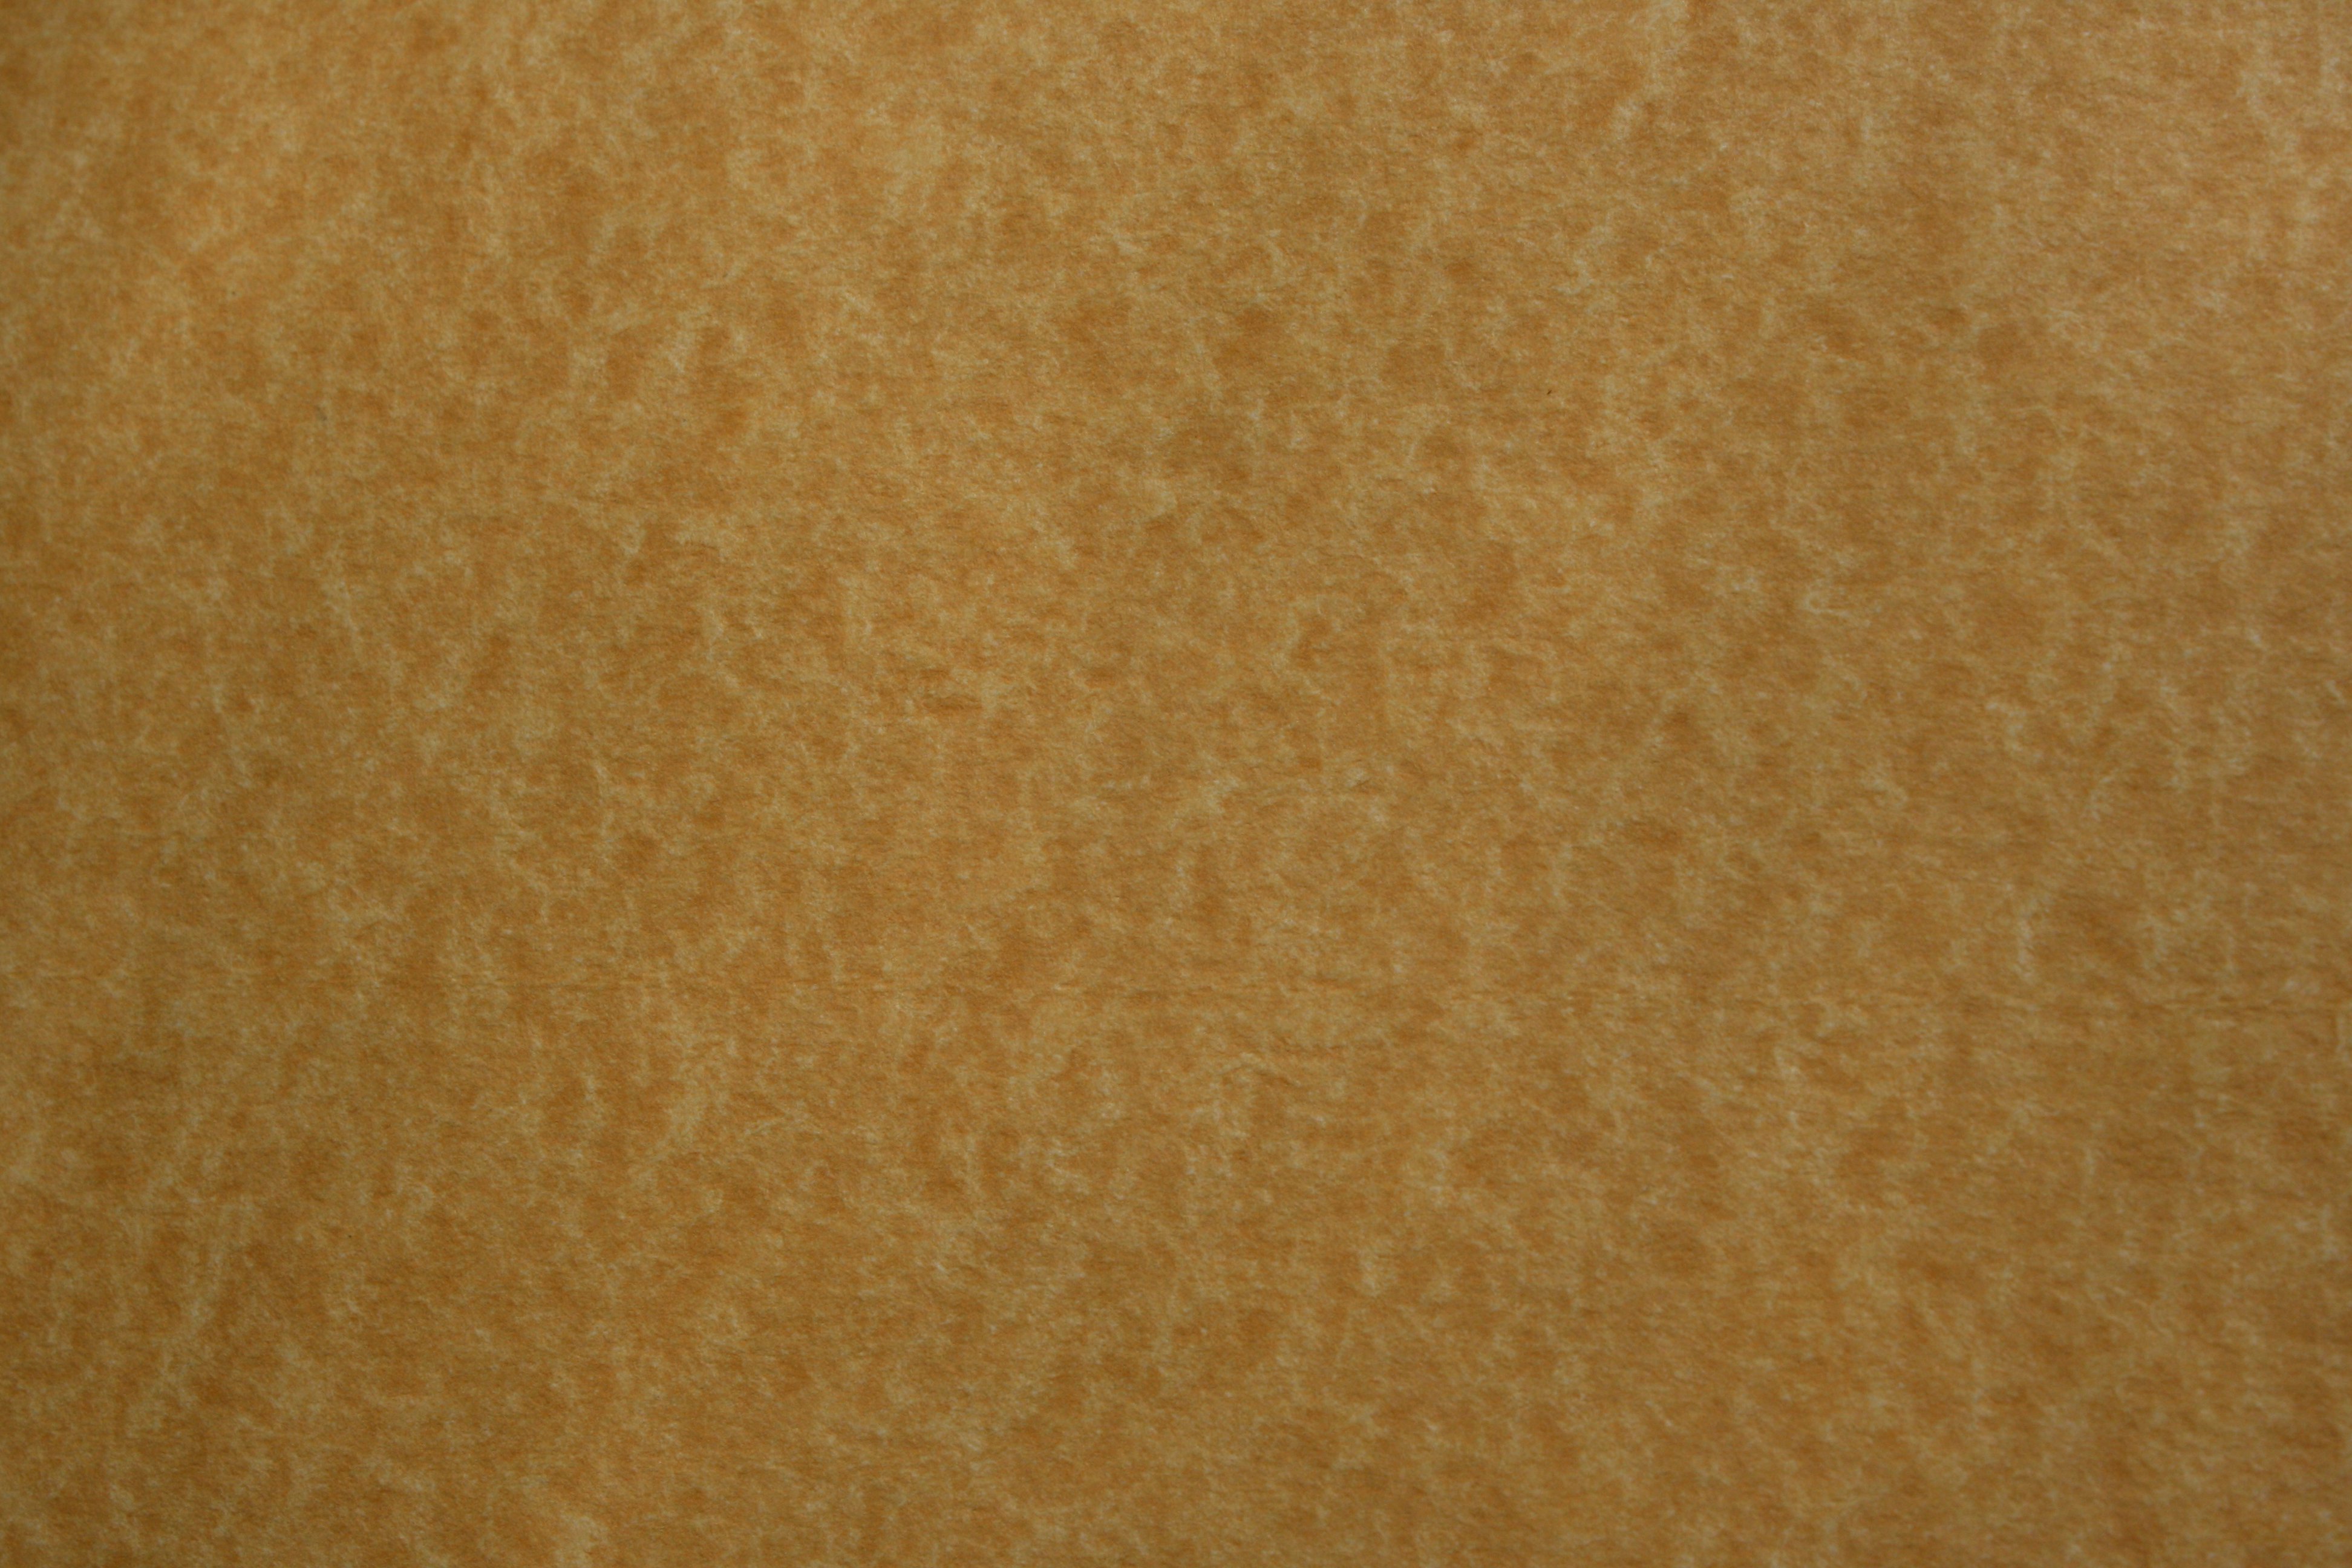 dark parchment texture